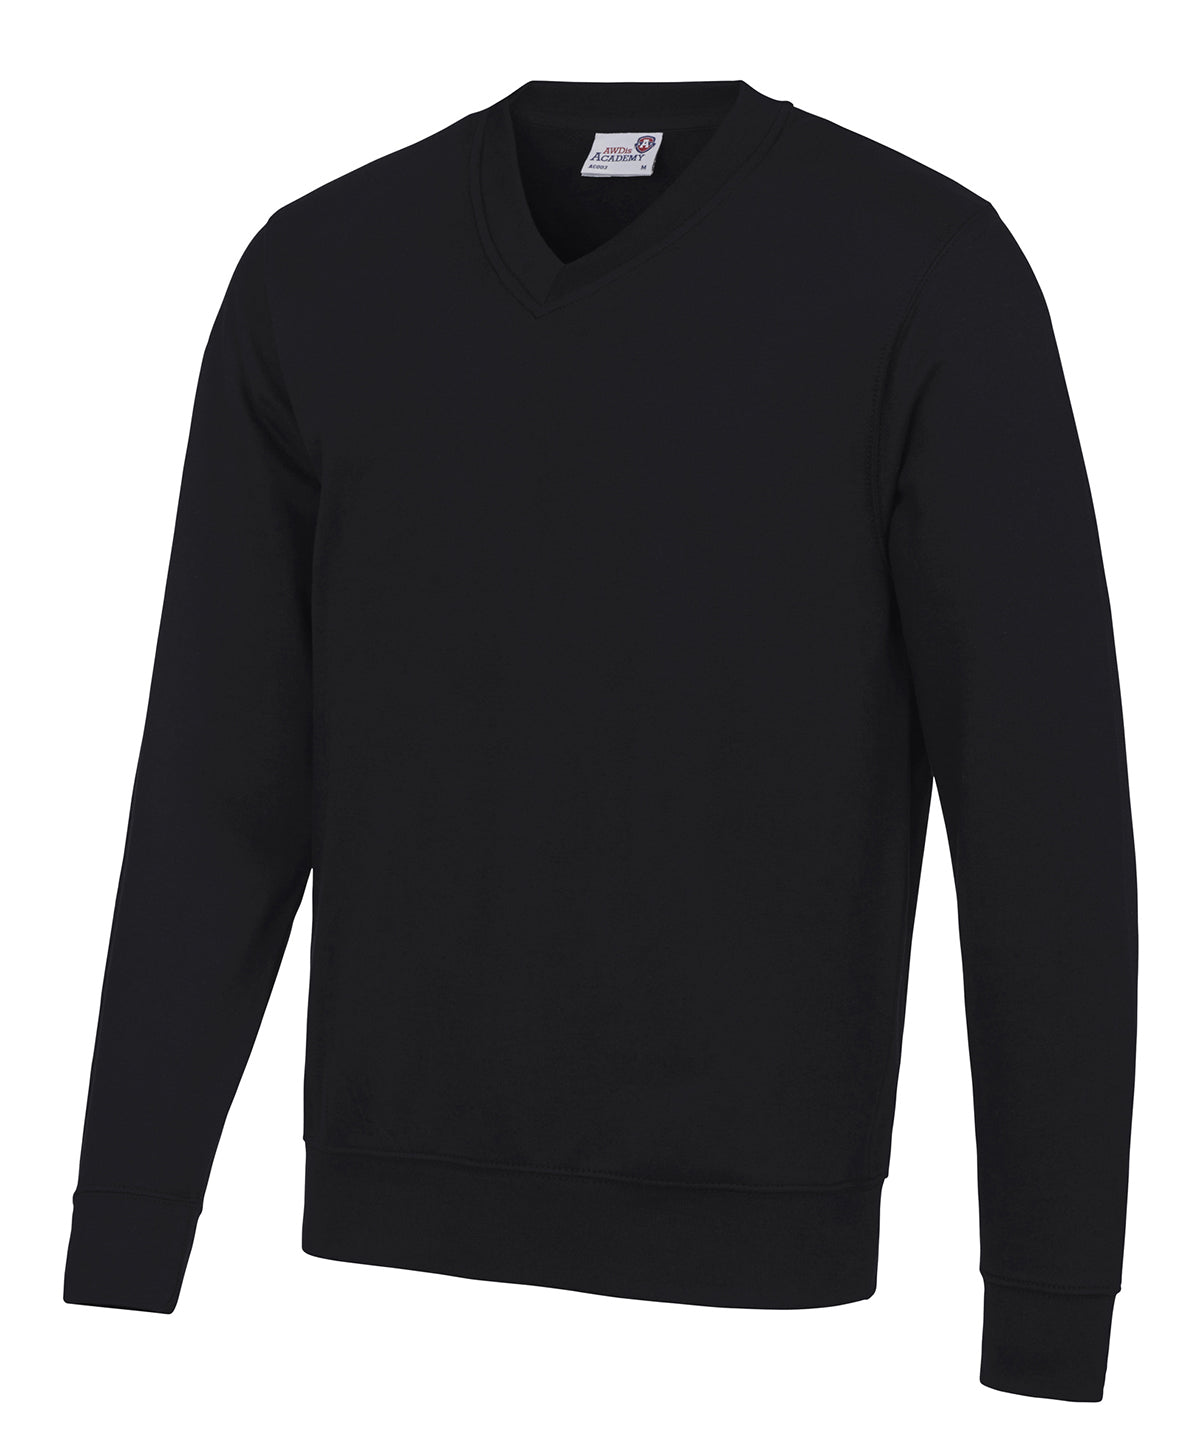 Personalised Sweatshirts - Black AWDis Academy Senior Academy v-neck sweatshirt